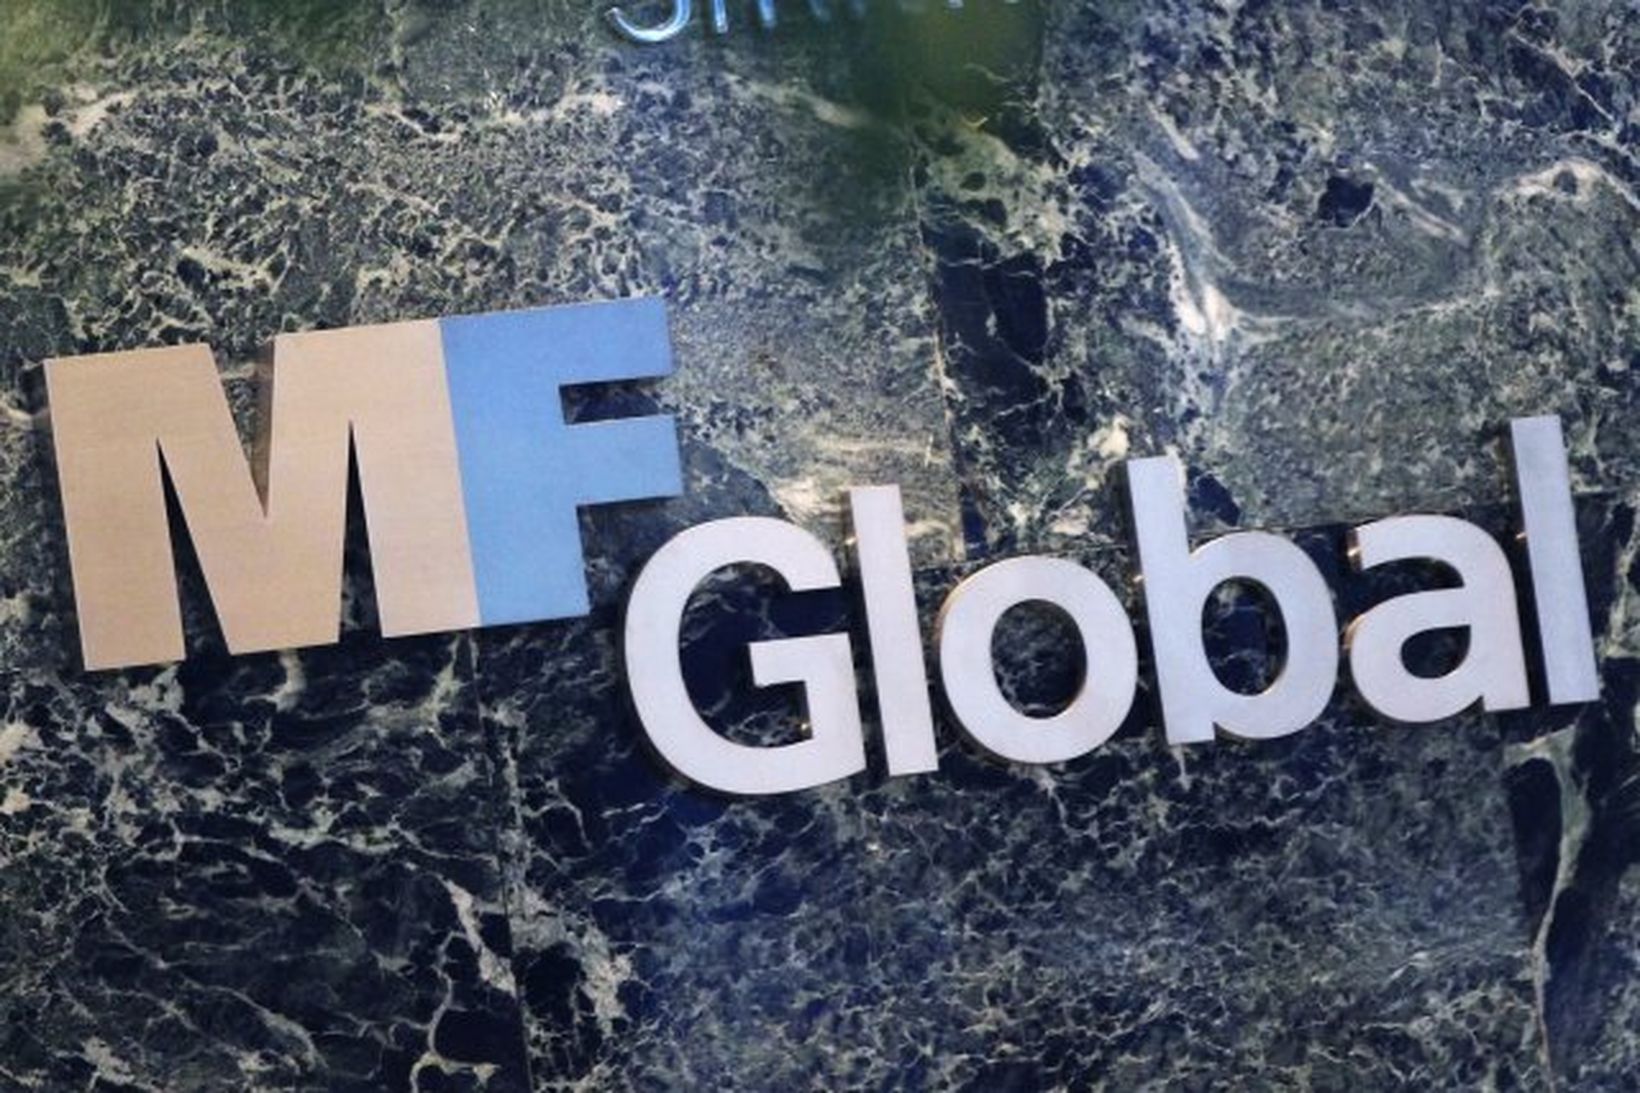 MF Global Holdings Ltd.